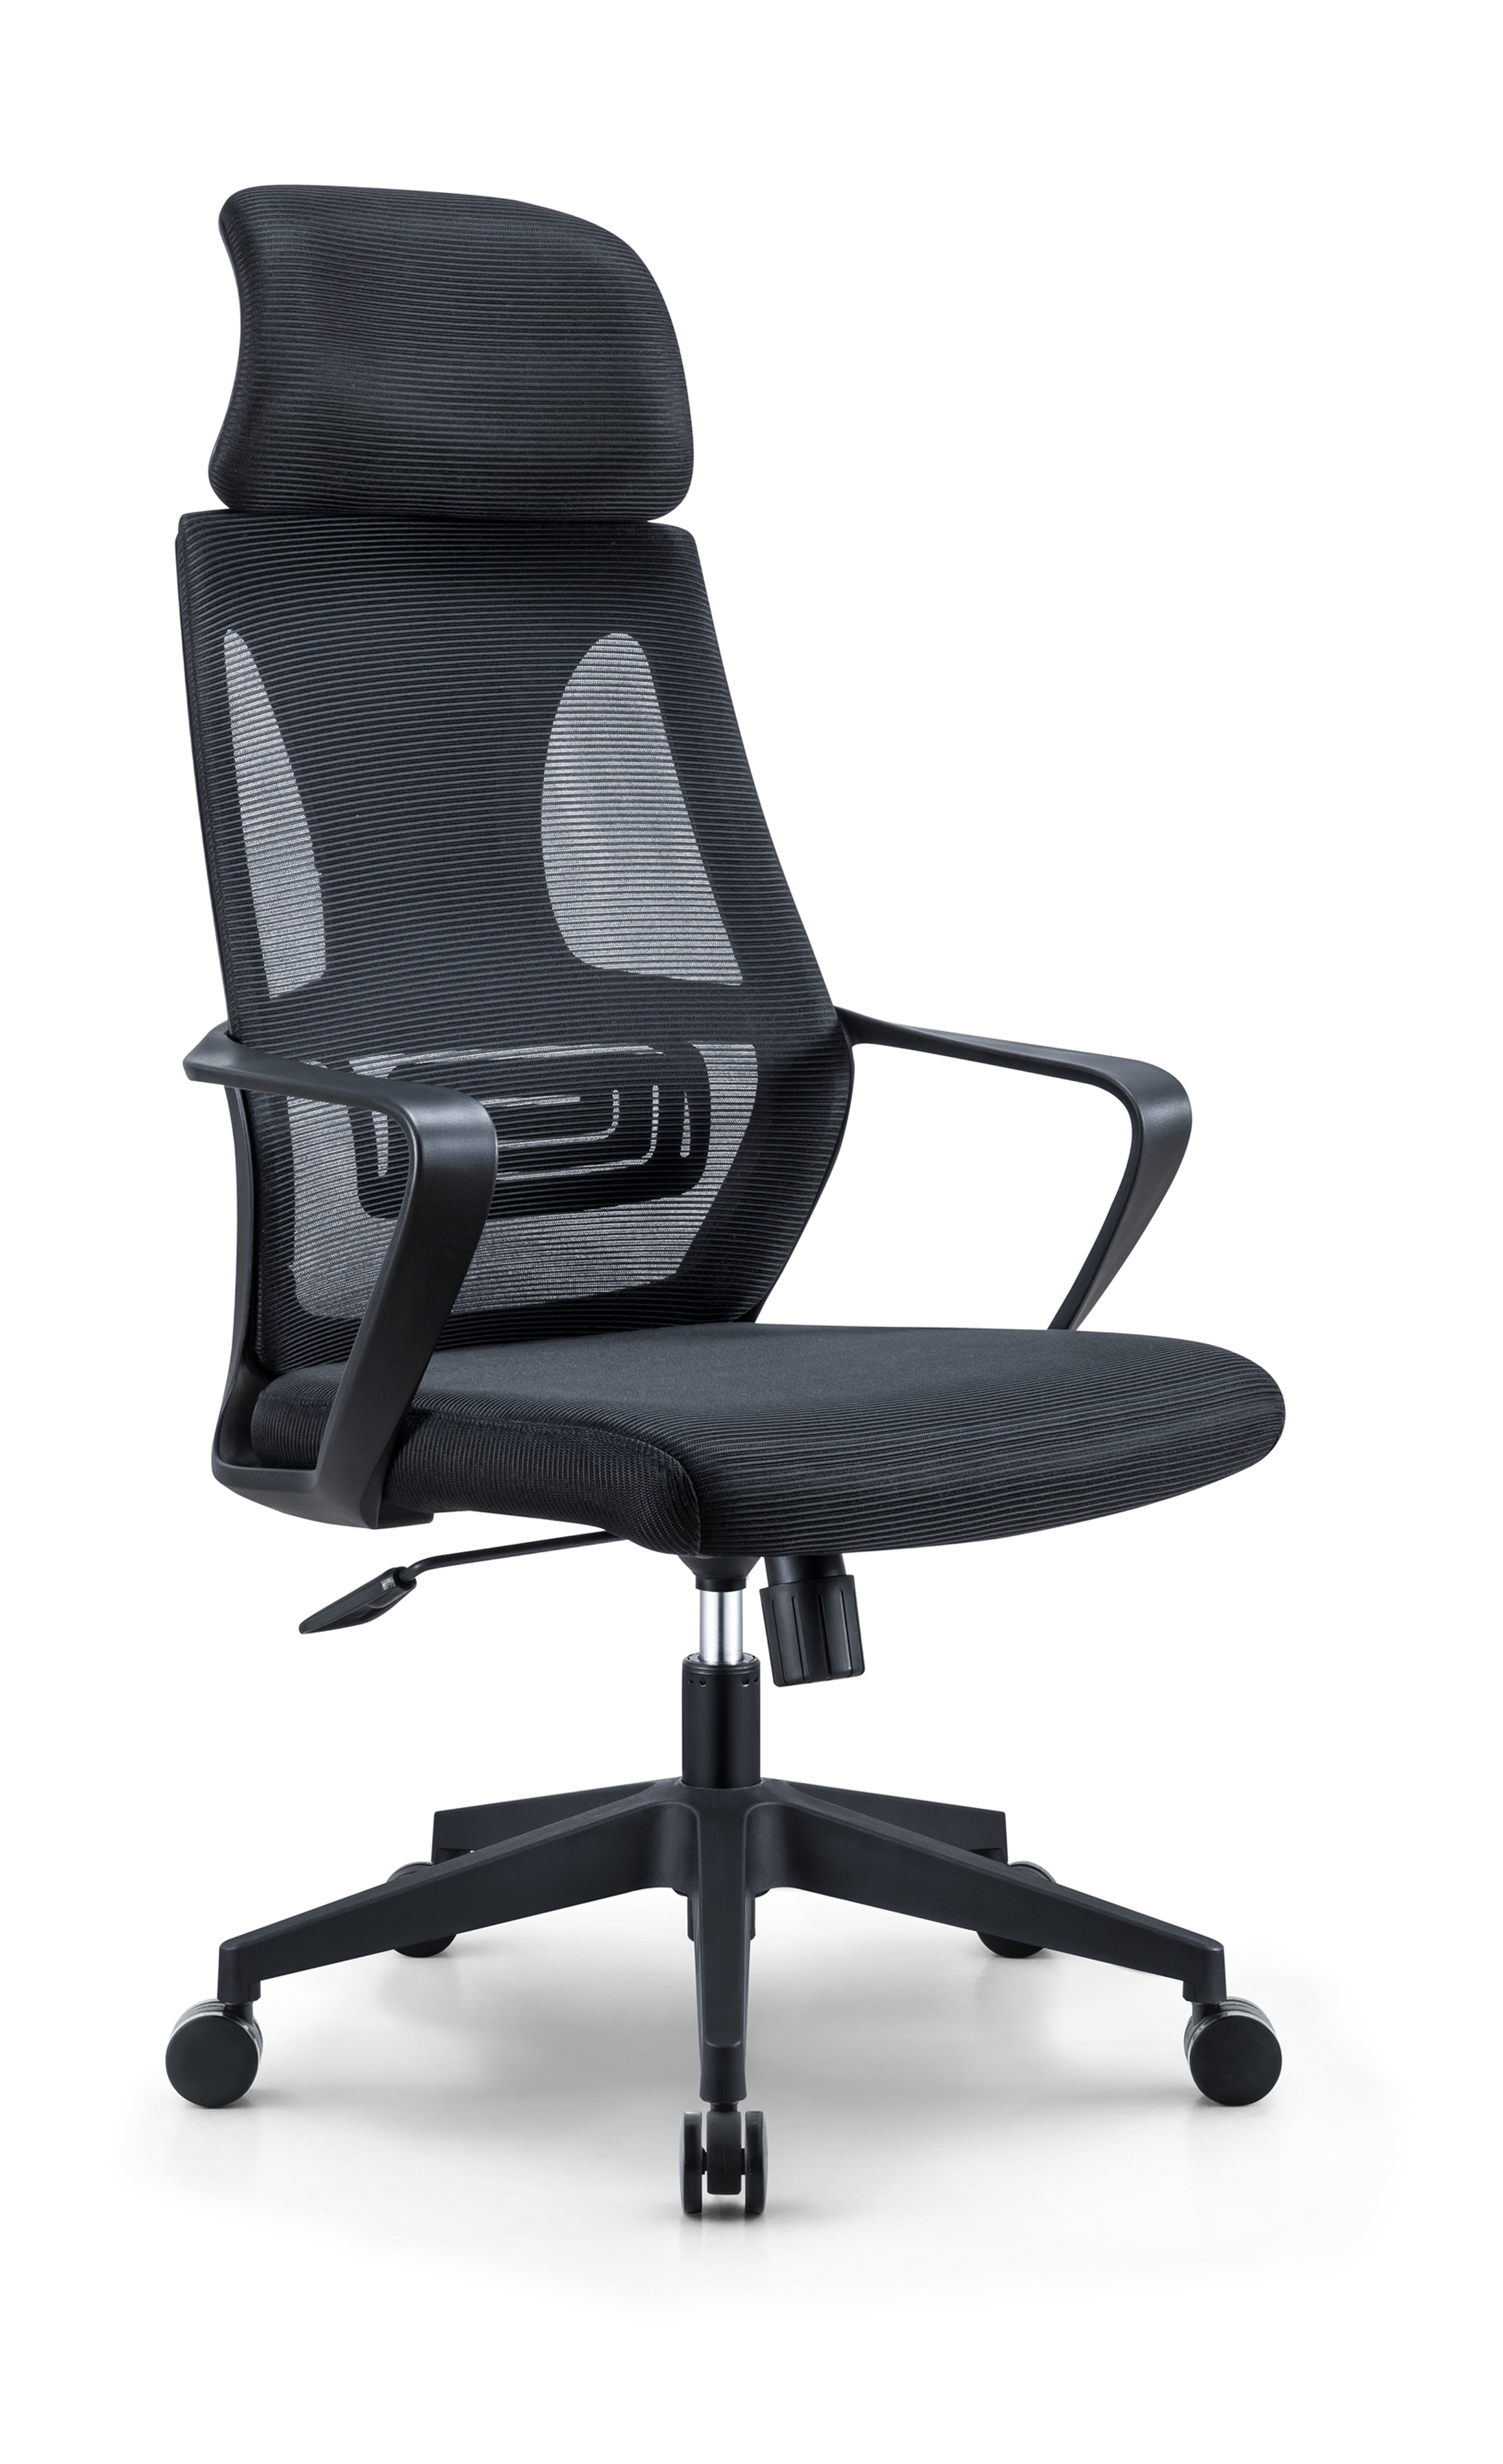 Newcity 544A חמה למכירה מודרני גבוה גב כיסא רשת כיסא המחיר הטוב ביותר רשת כיסא מתכוונן משענת ראש רשת כיסא צוות כיסא מסתובב ספק ריהוט משרדי Foshan סין